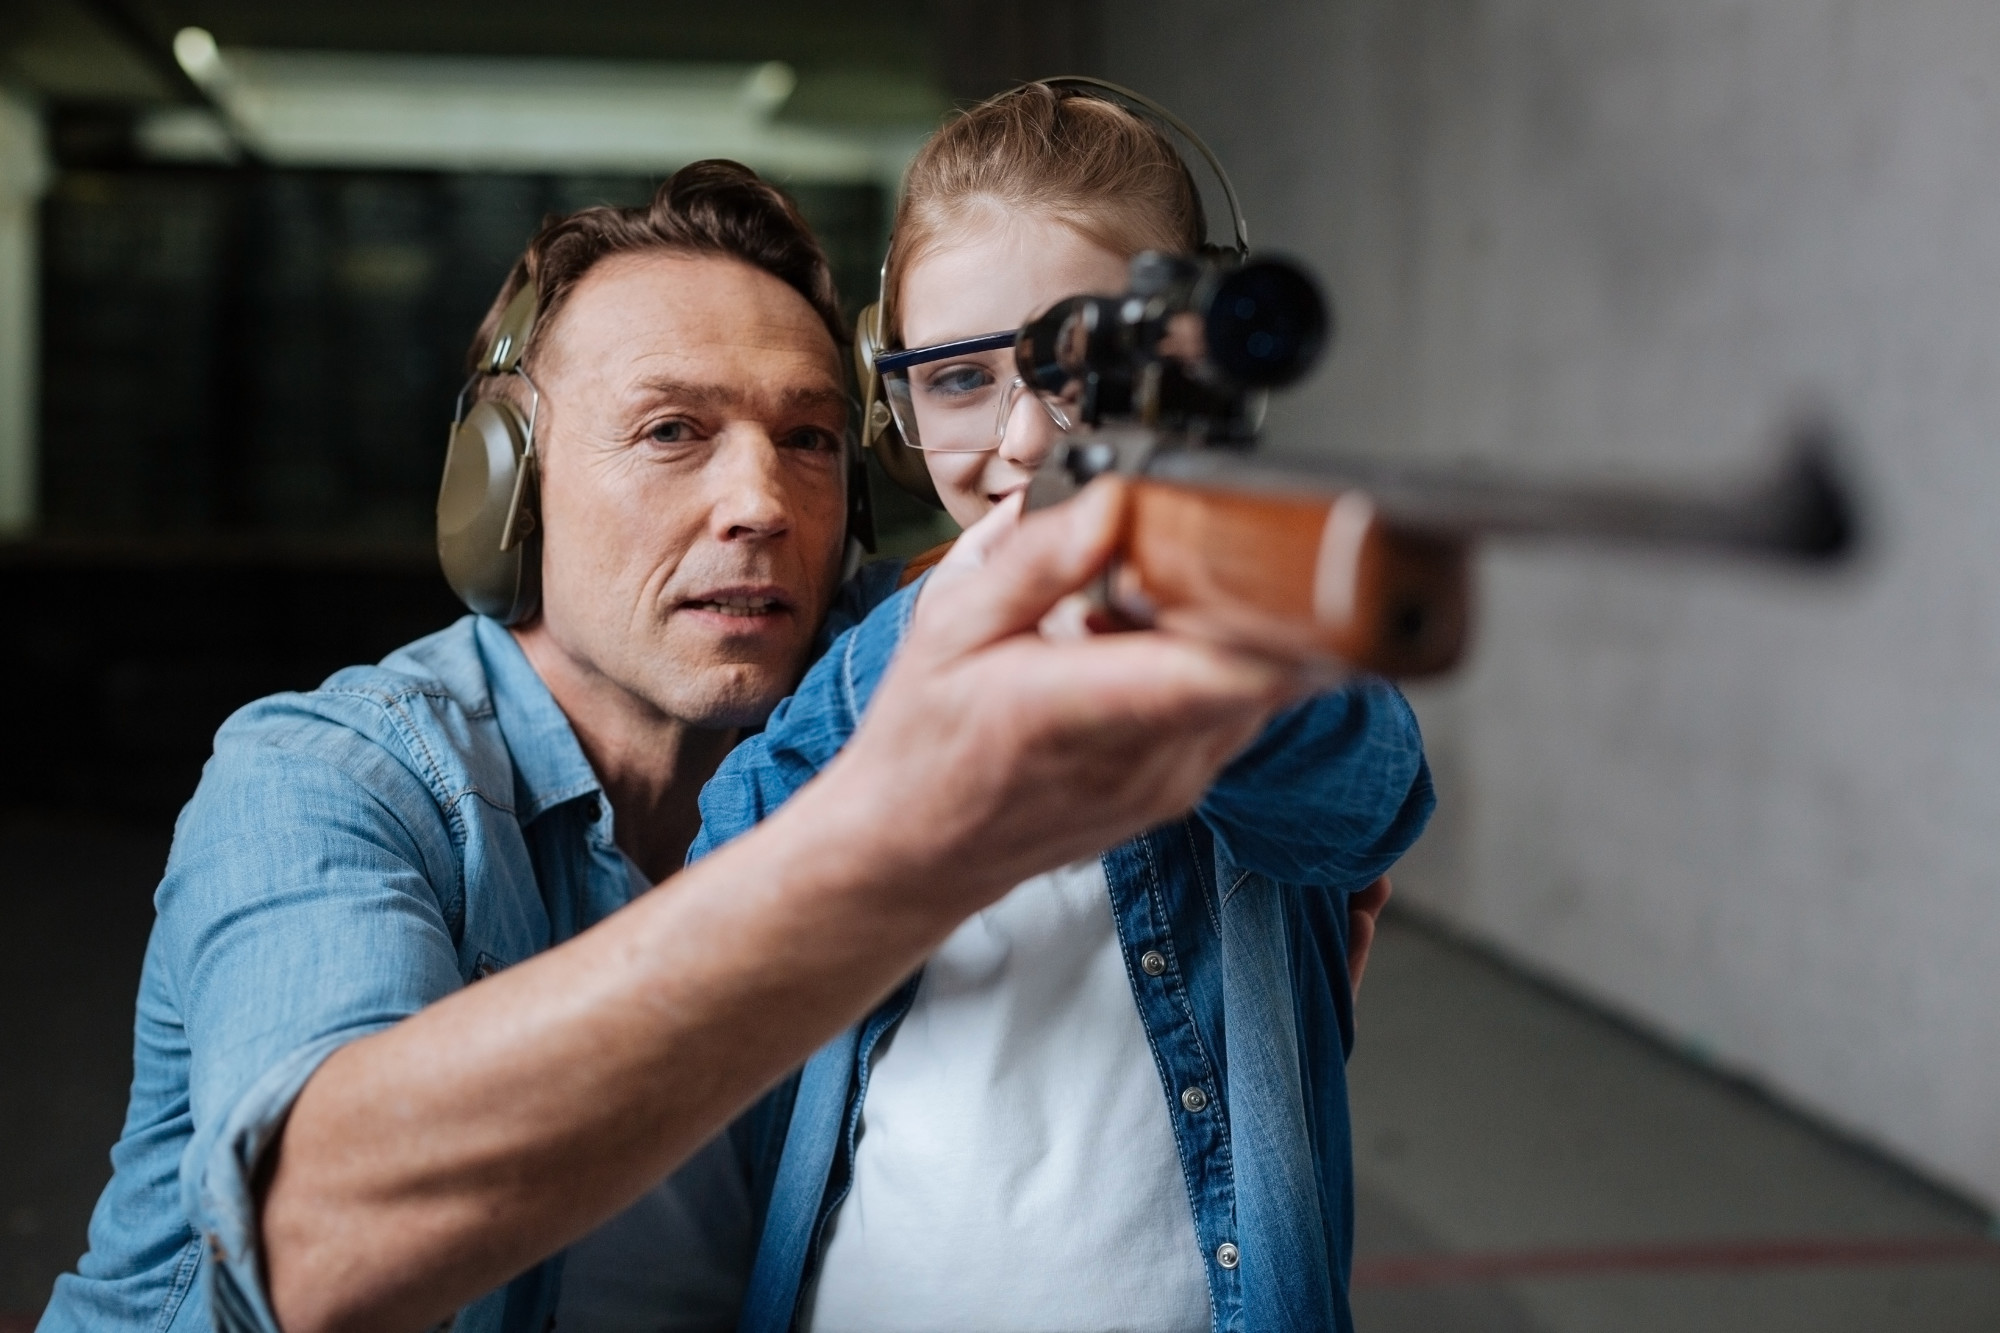 5 Tips for Teaching Kids Gun Safety Rules OTBVA